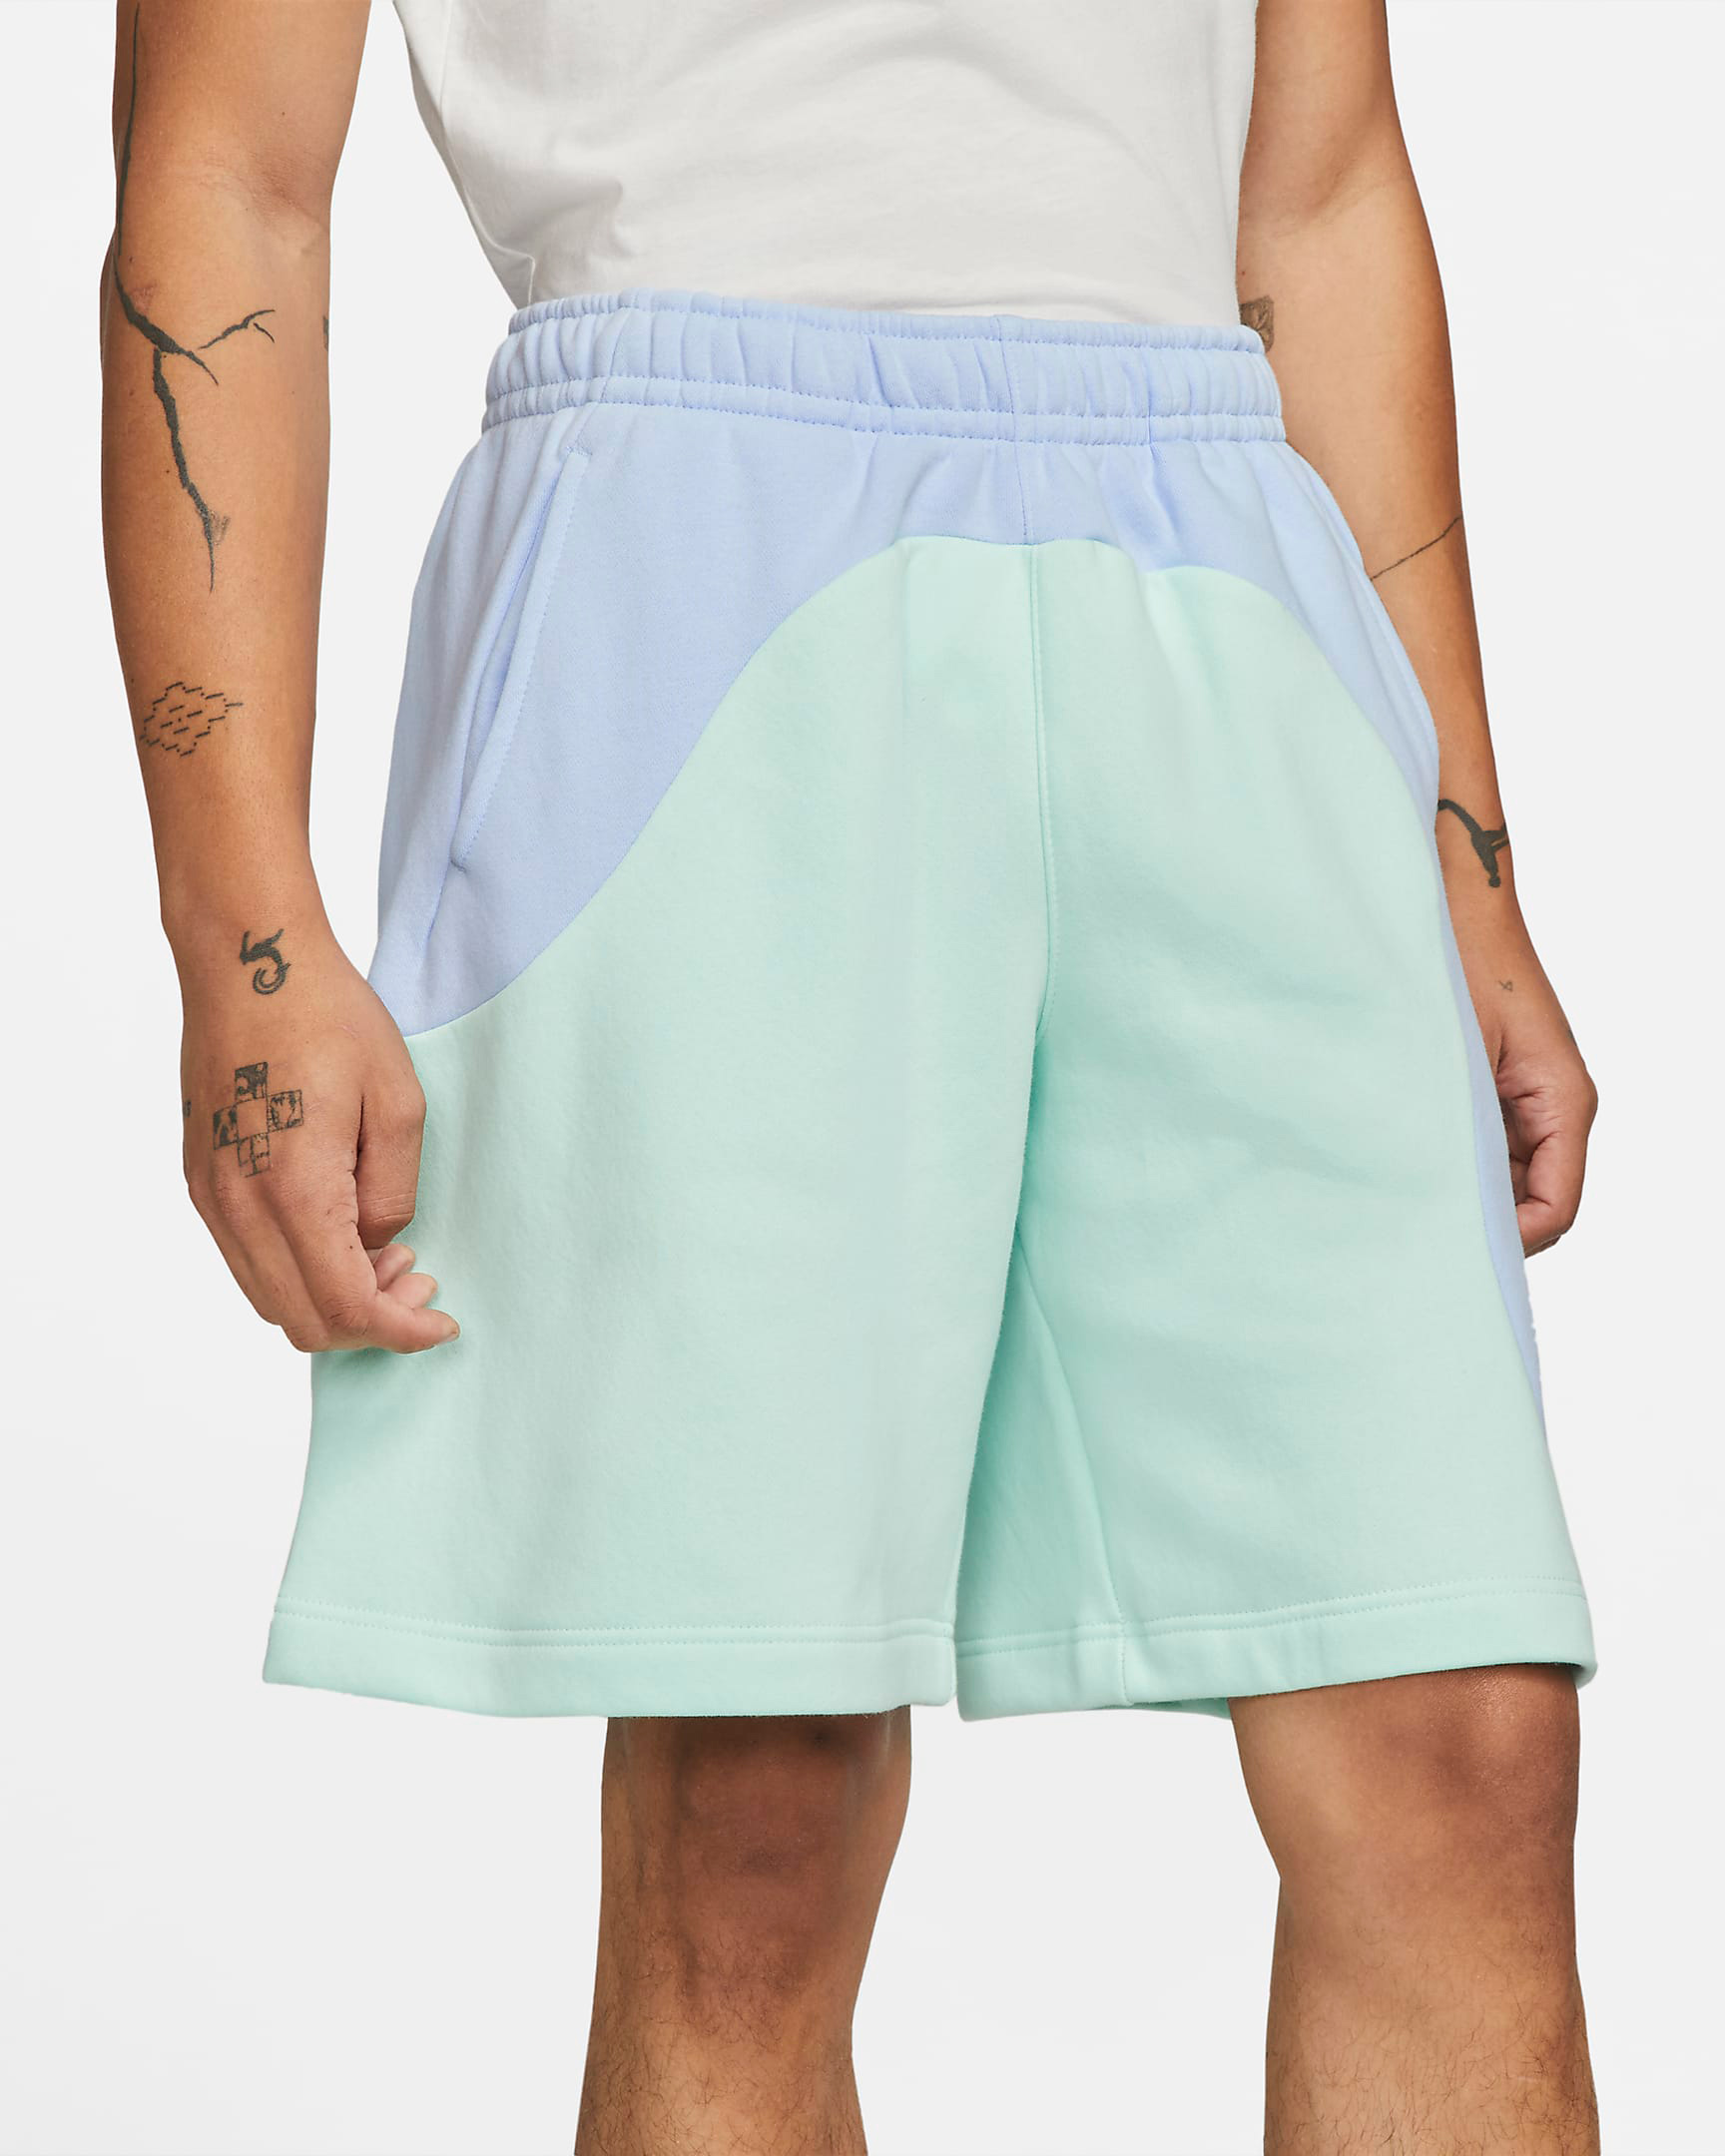 nike-sportswear-color-clash-fleece-shorts-light-marine-mint-foam-2